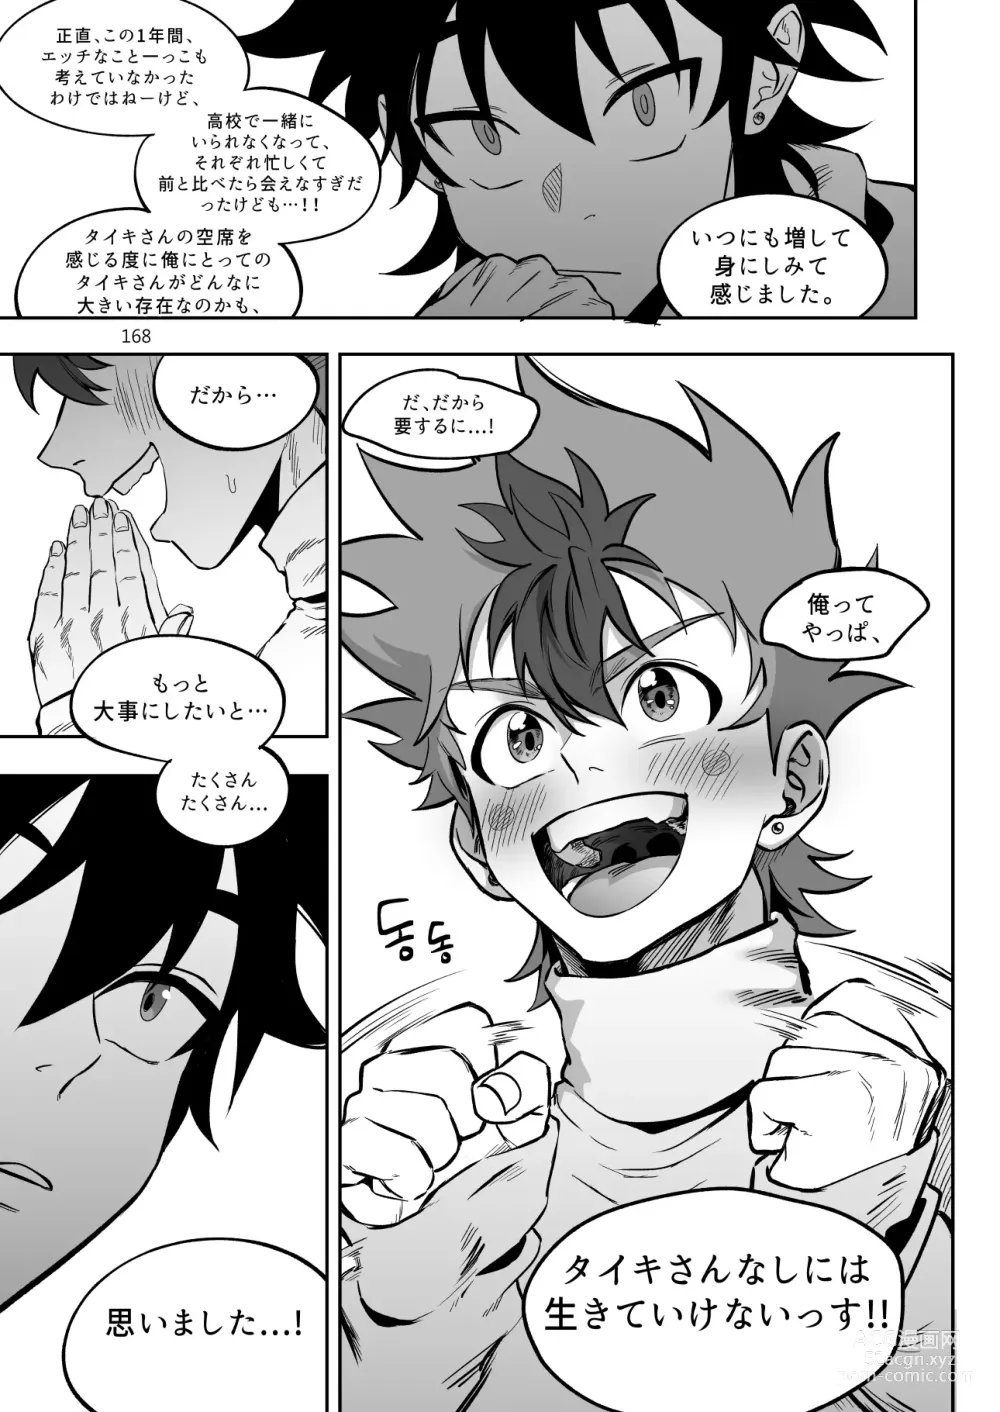 Page 169 of doujinshi Final Countdown